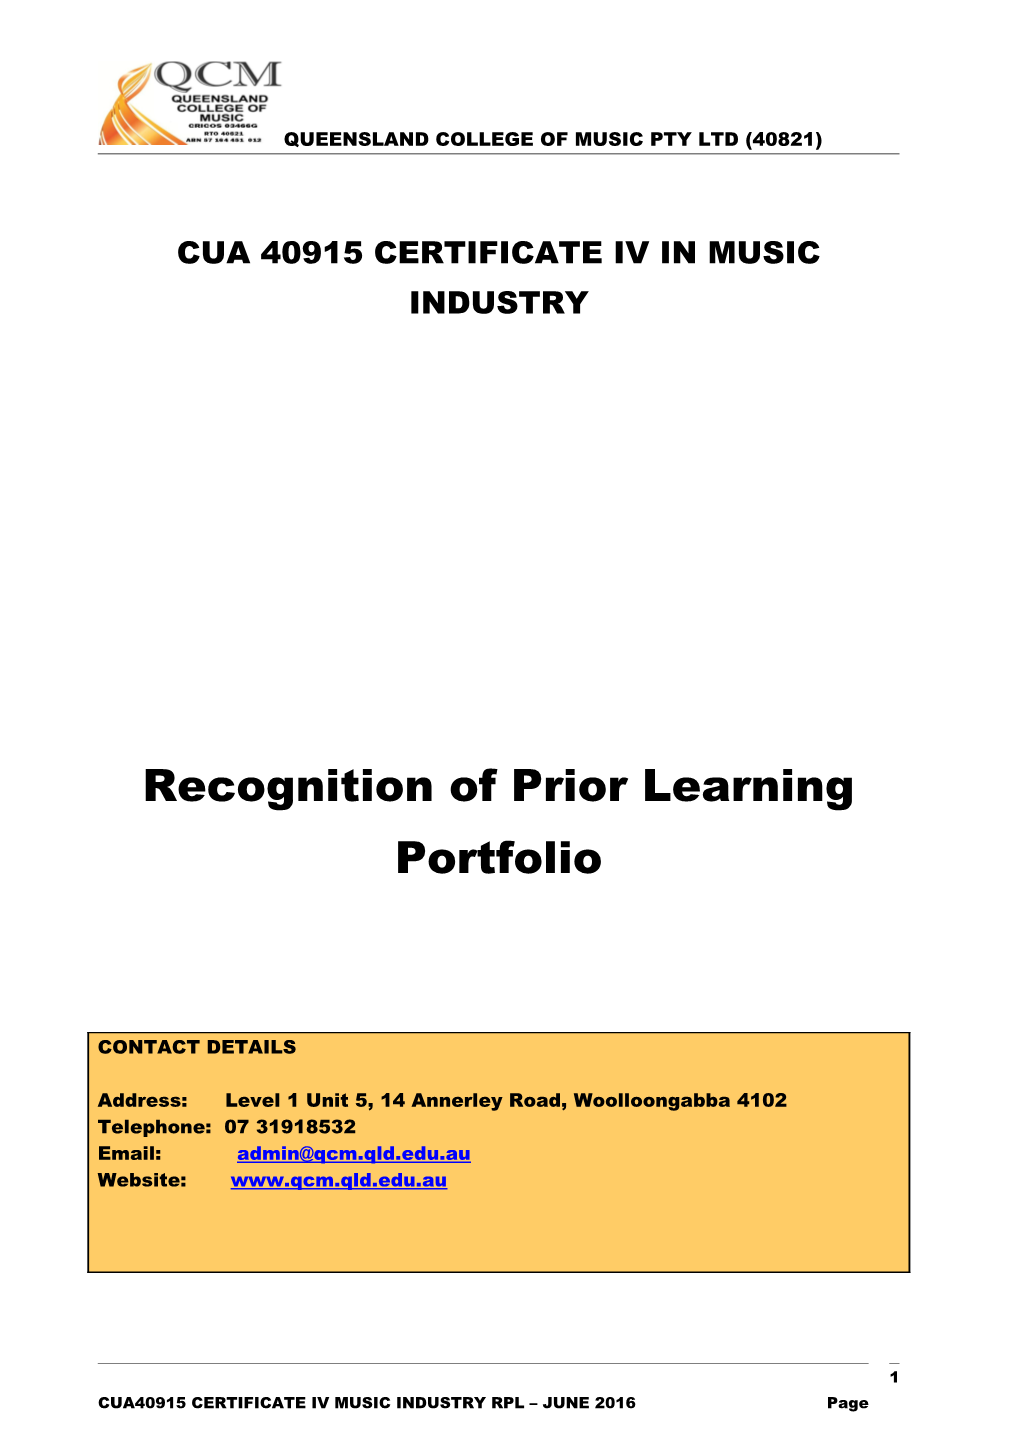 Cua 40915 Certificate Iv in Music Industry